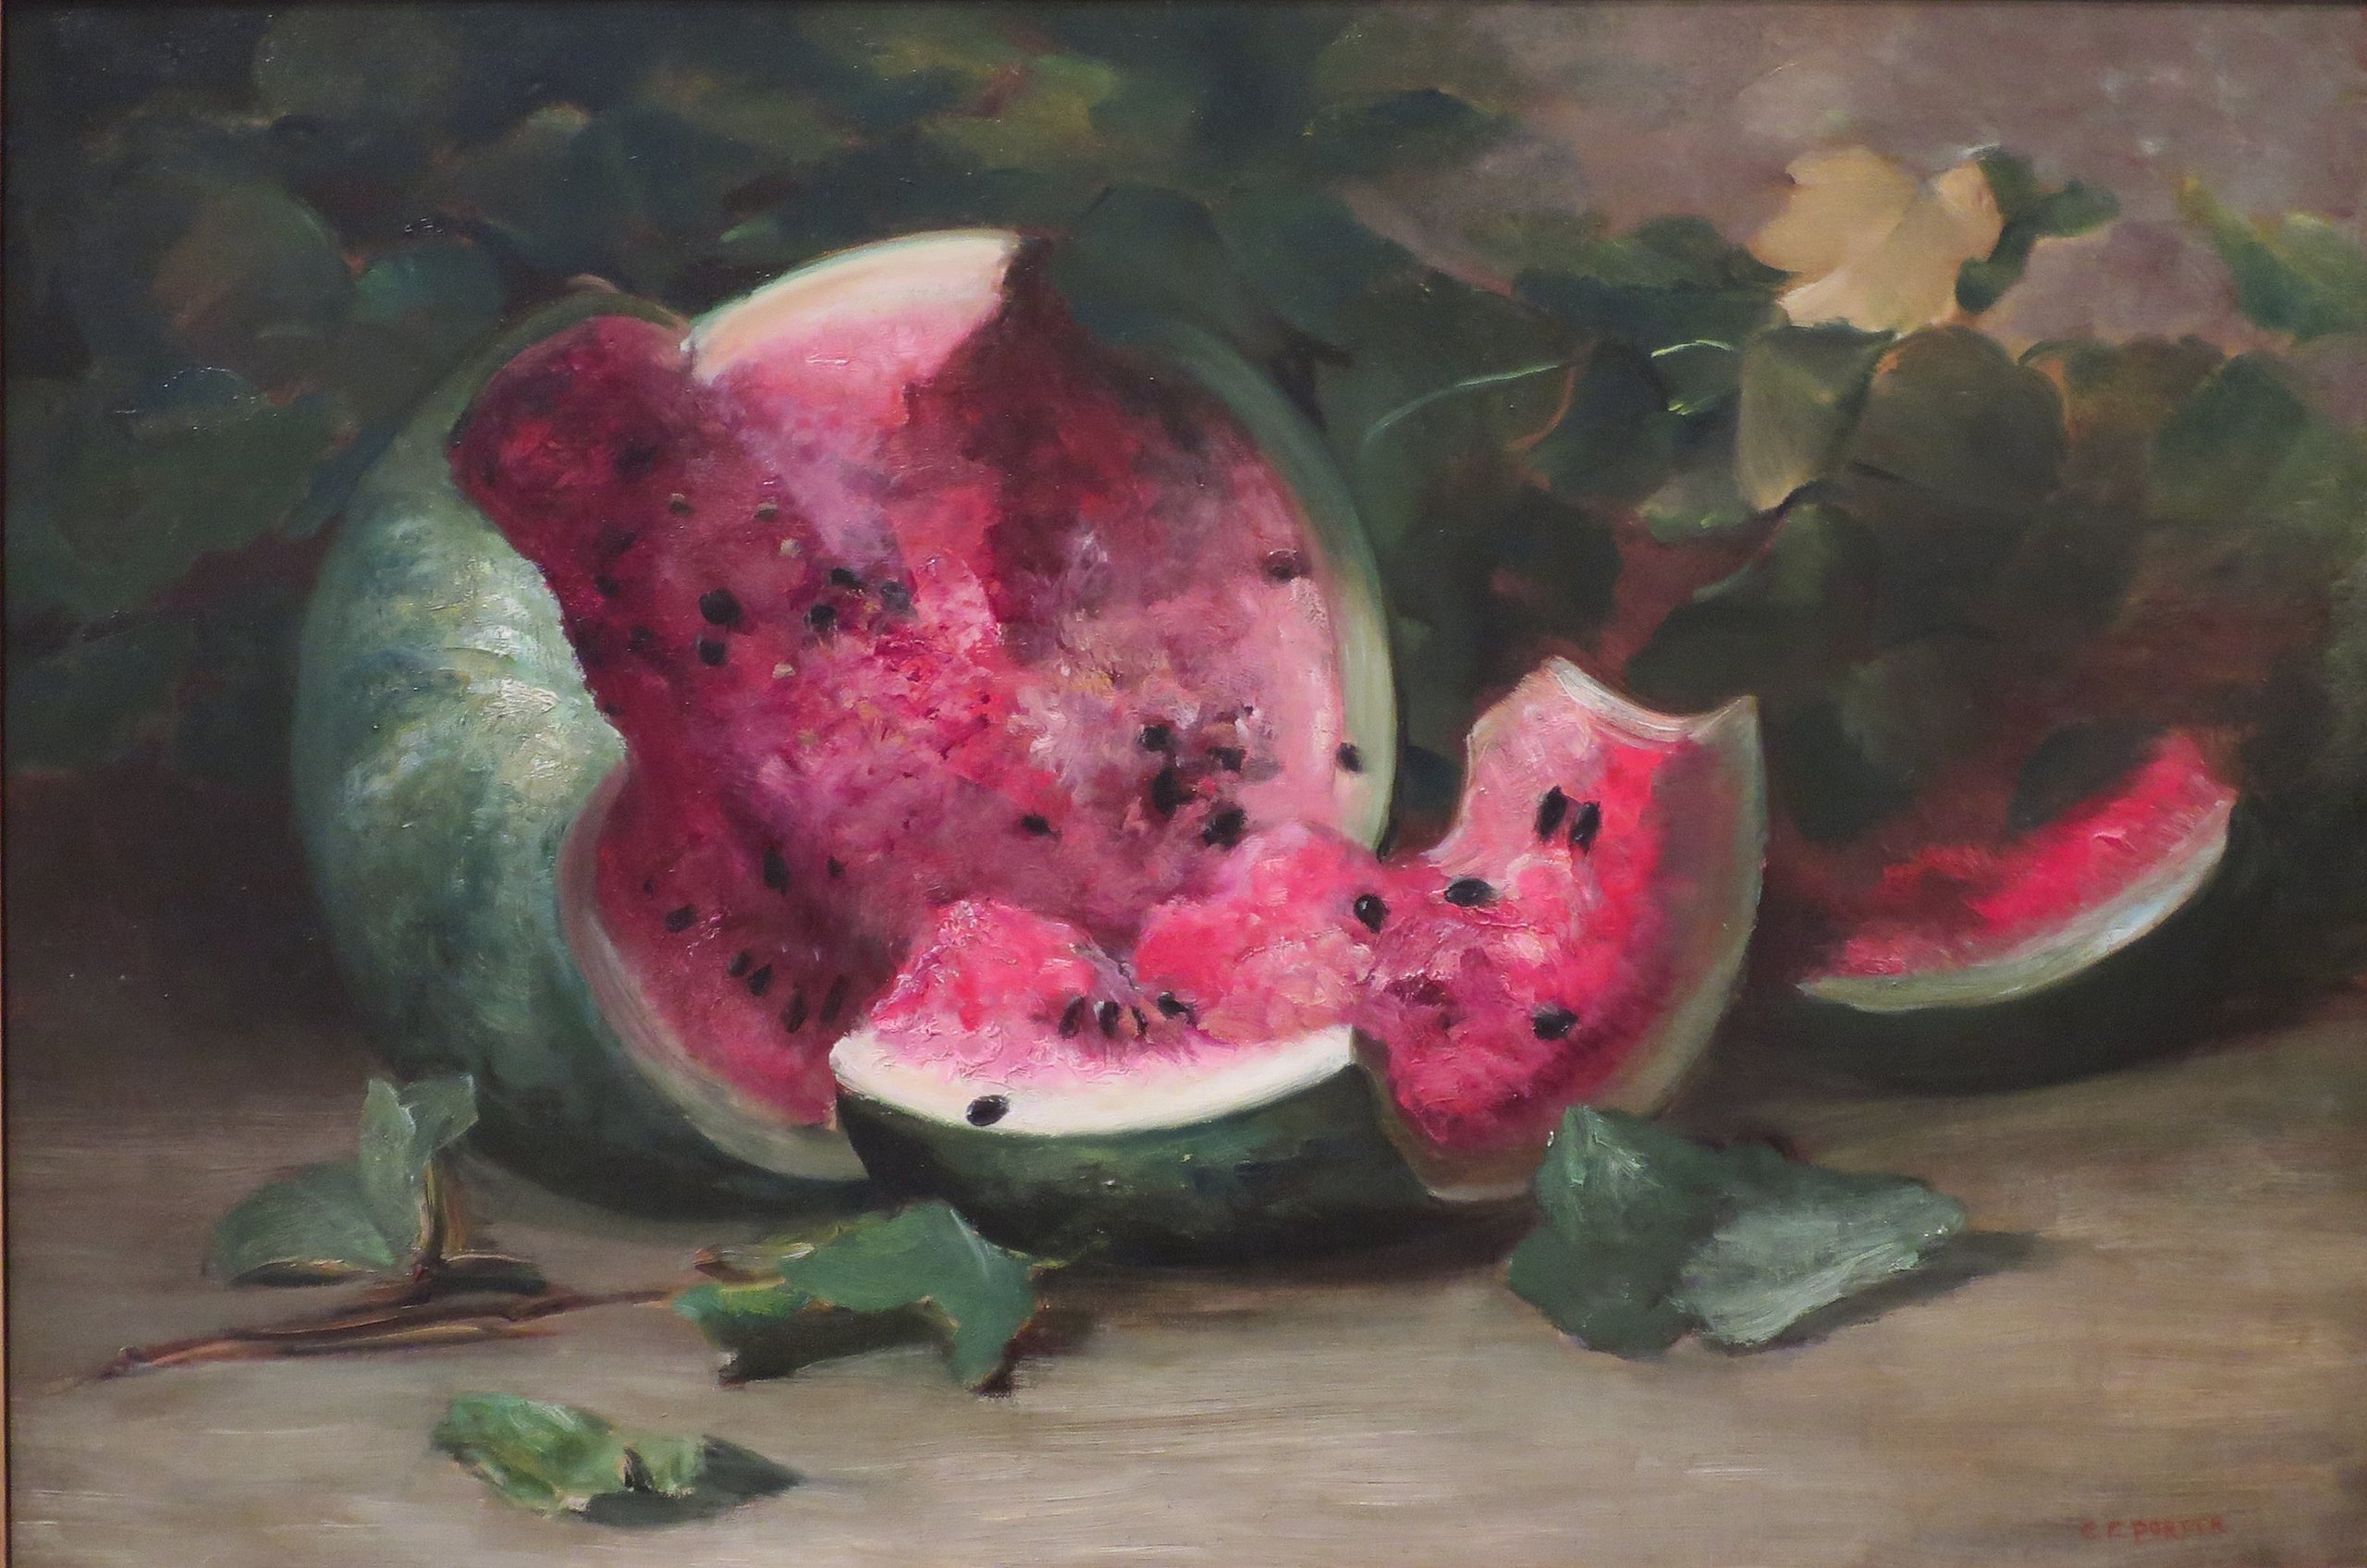 Sin título (Sandía partida) by Charles Ethan Porter - c. 1890 - 48,6 × 71,6 cm Museo Metropolitano de Arte